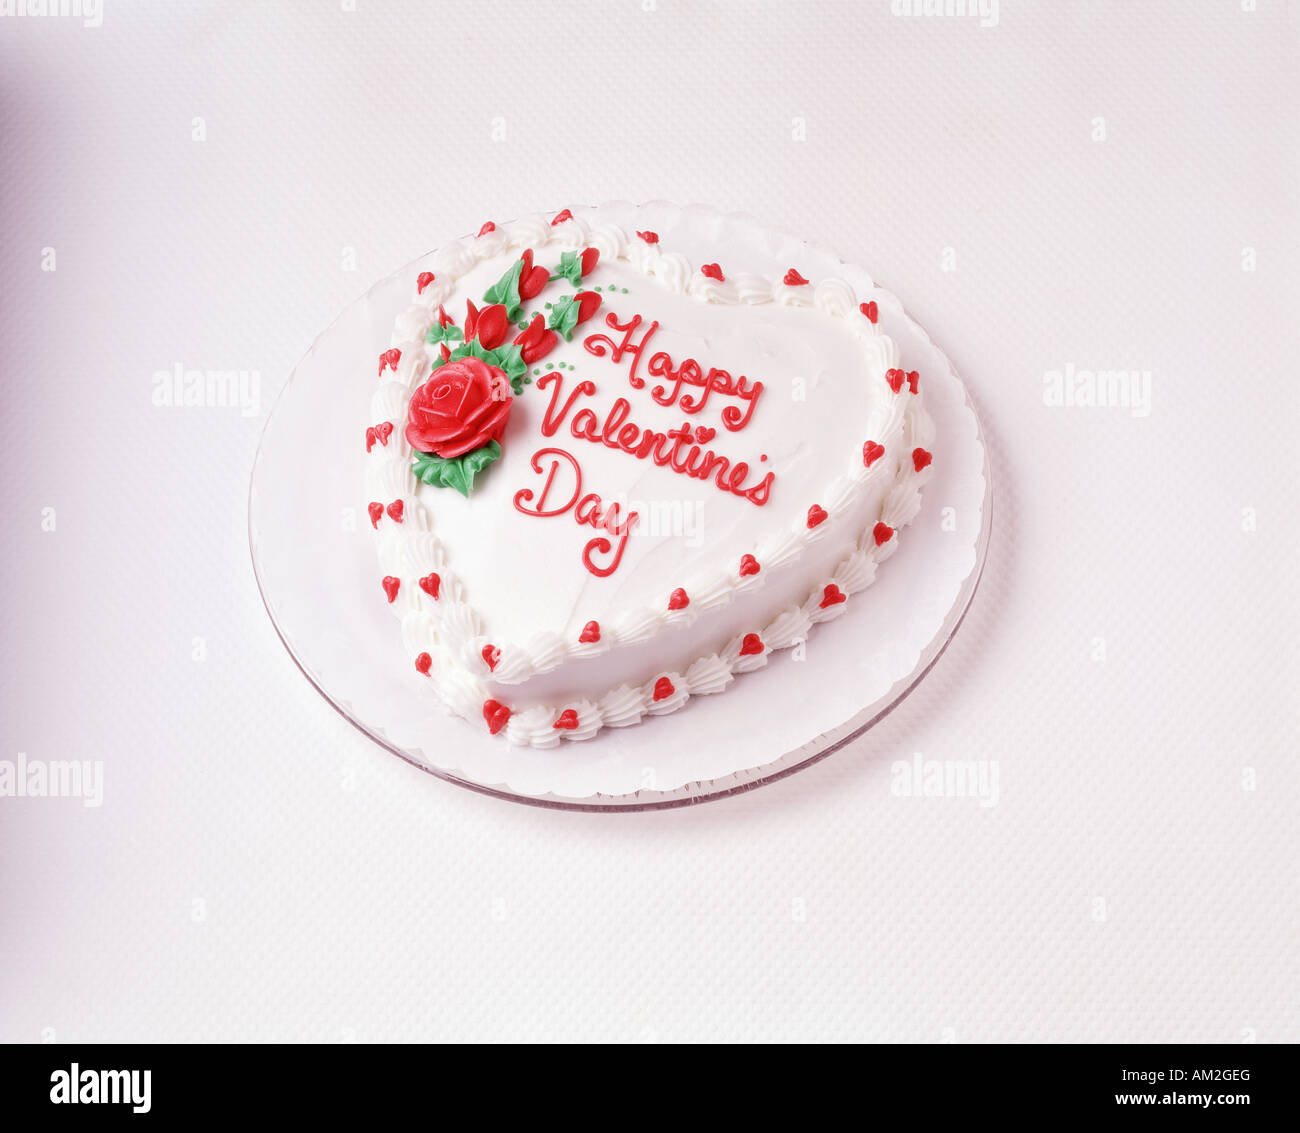 Happy Valentines Day en forme de coeur rouge gâteau glaçage glaçage vanille fleurs plaqués holiday celebration party joie amour symbolique Banque D'Images